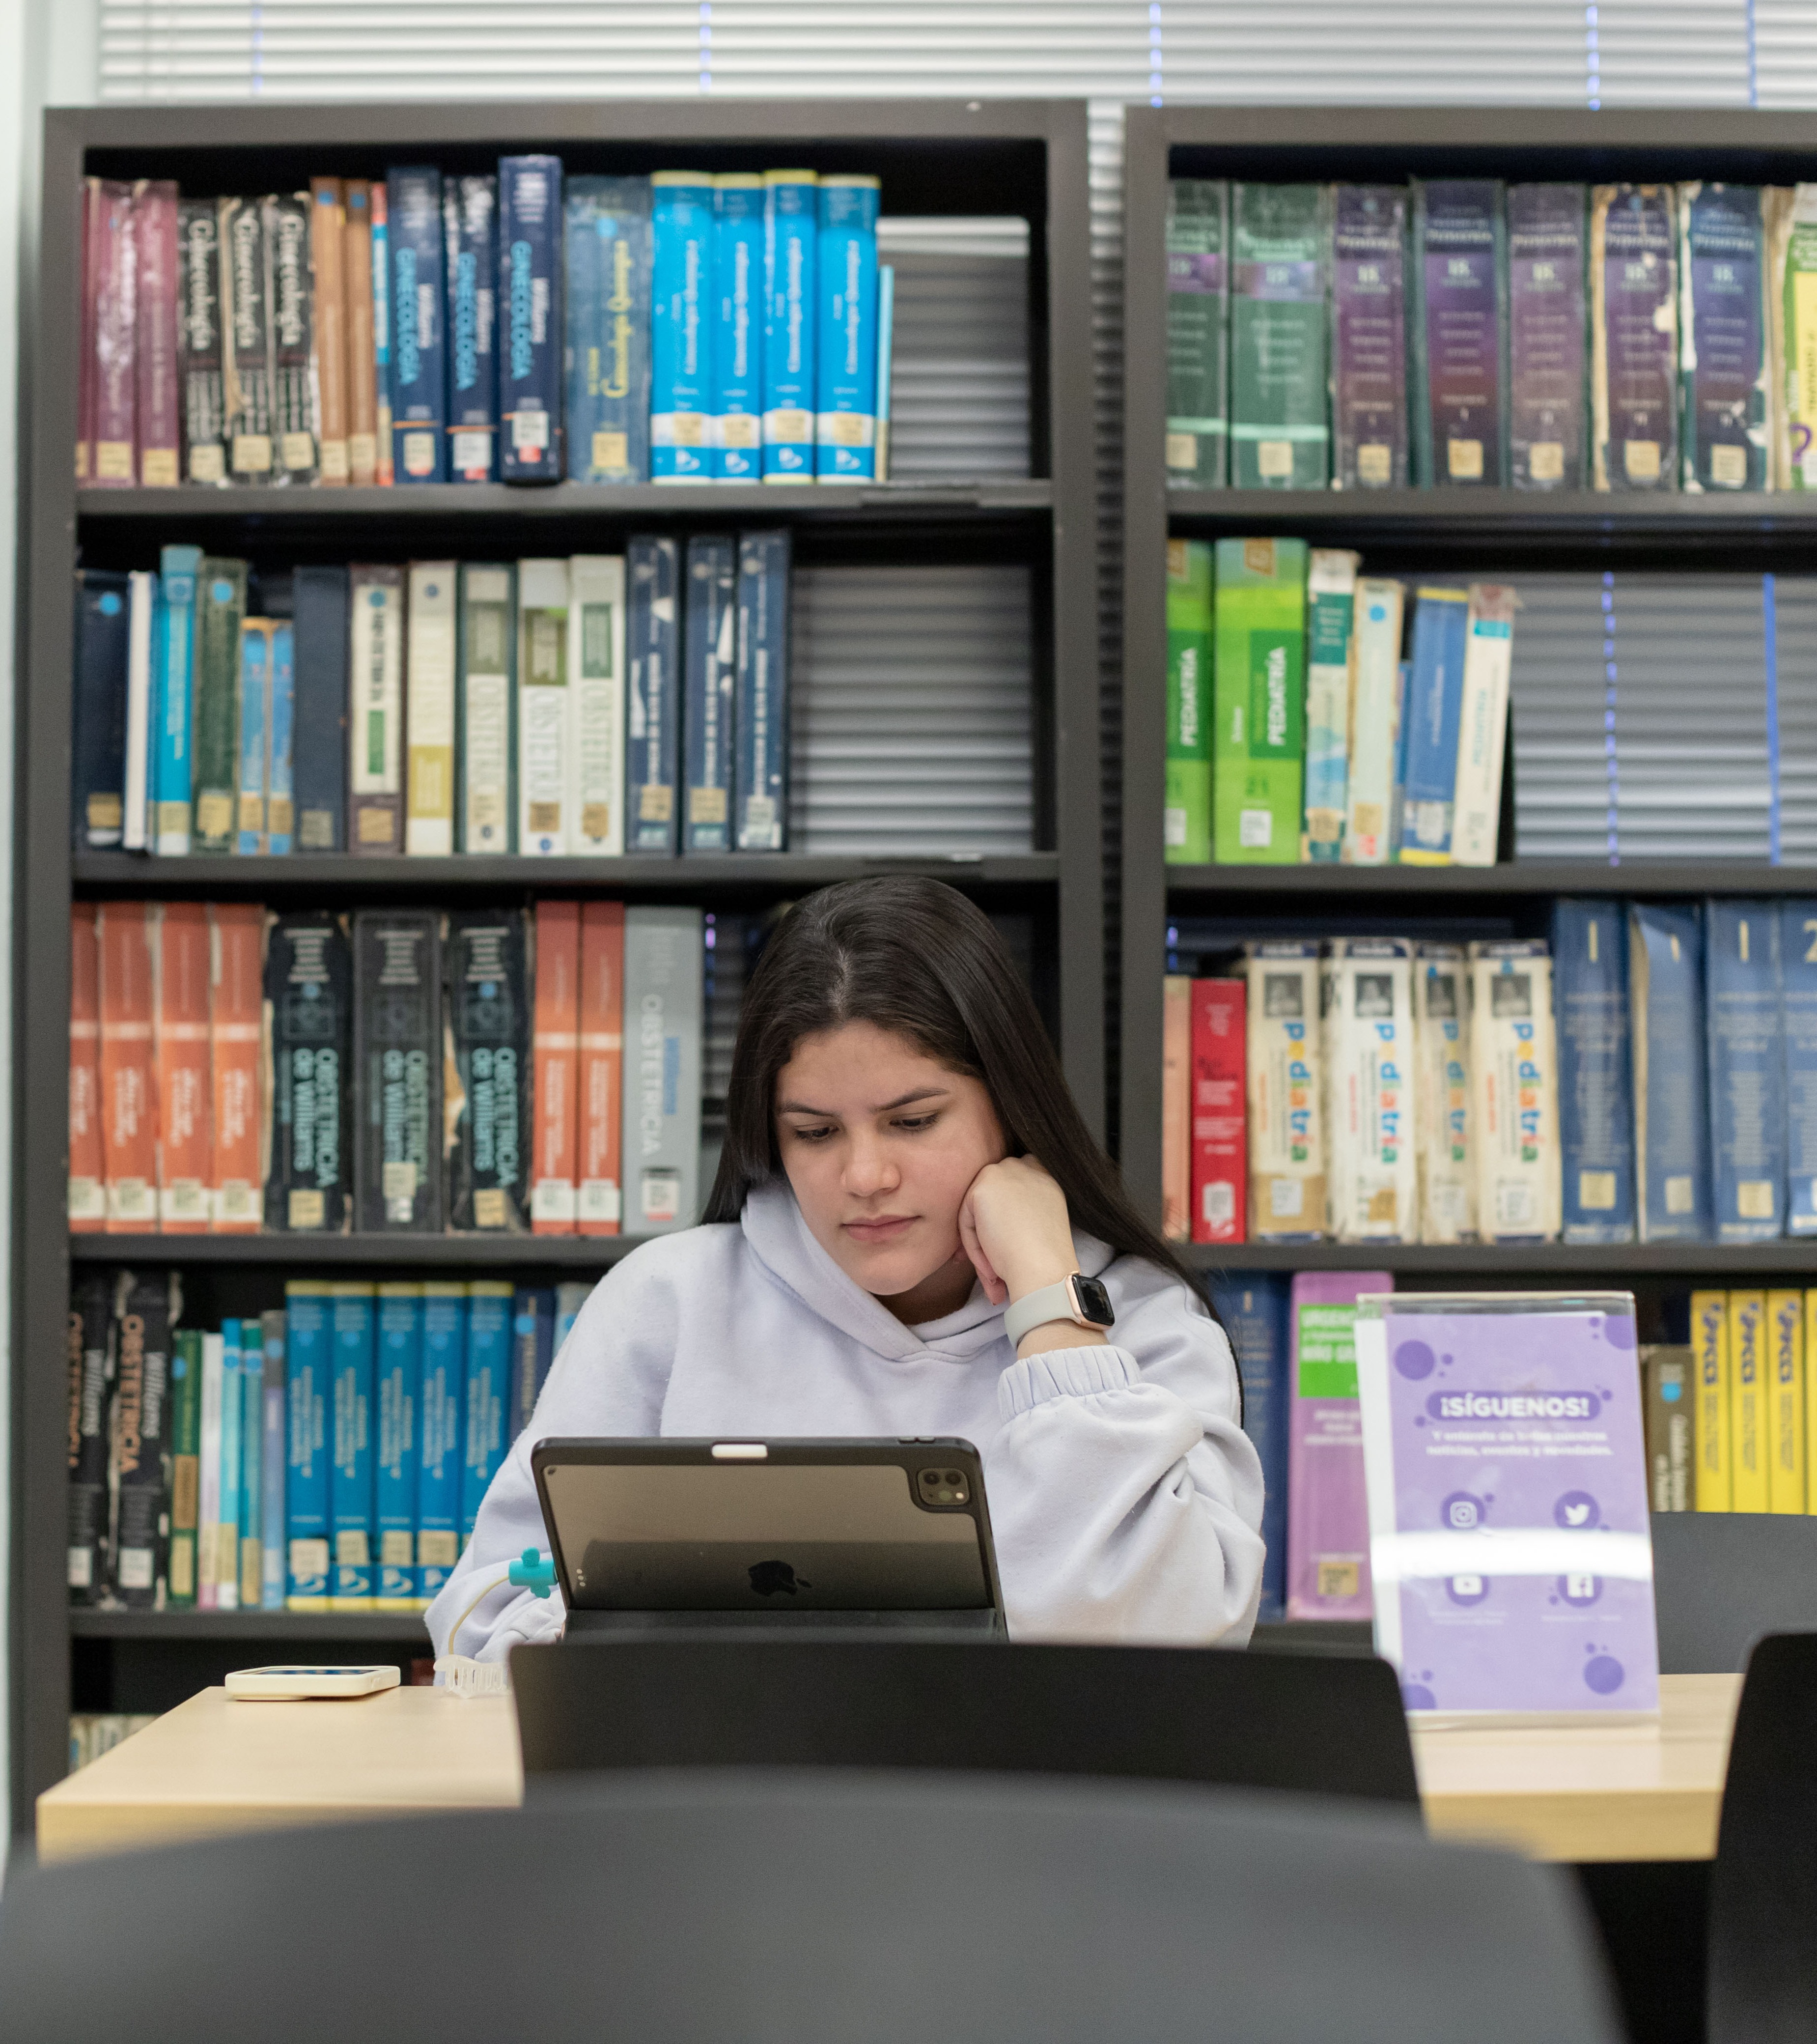 esta es una imagen de unas personas utilizando los computadores de la sala de usuarios de la biblioteca